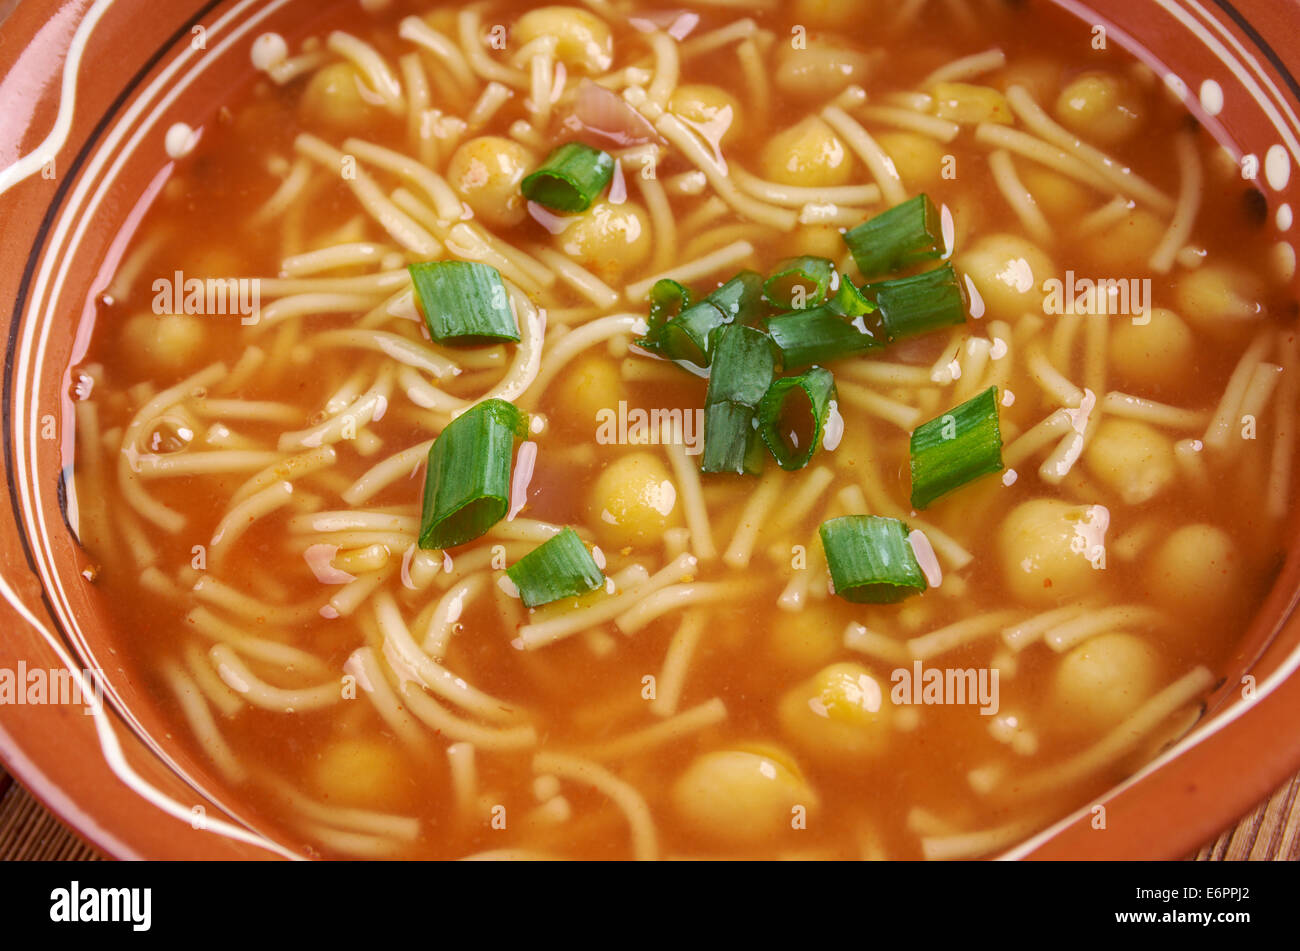 Minestra di Ceci - Italian chickpea  soup Stock Photo